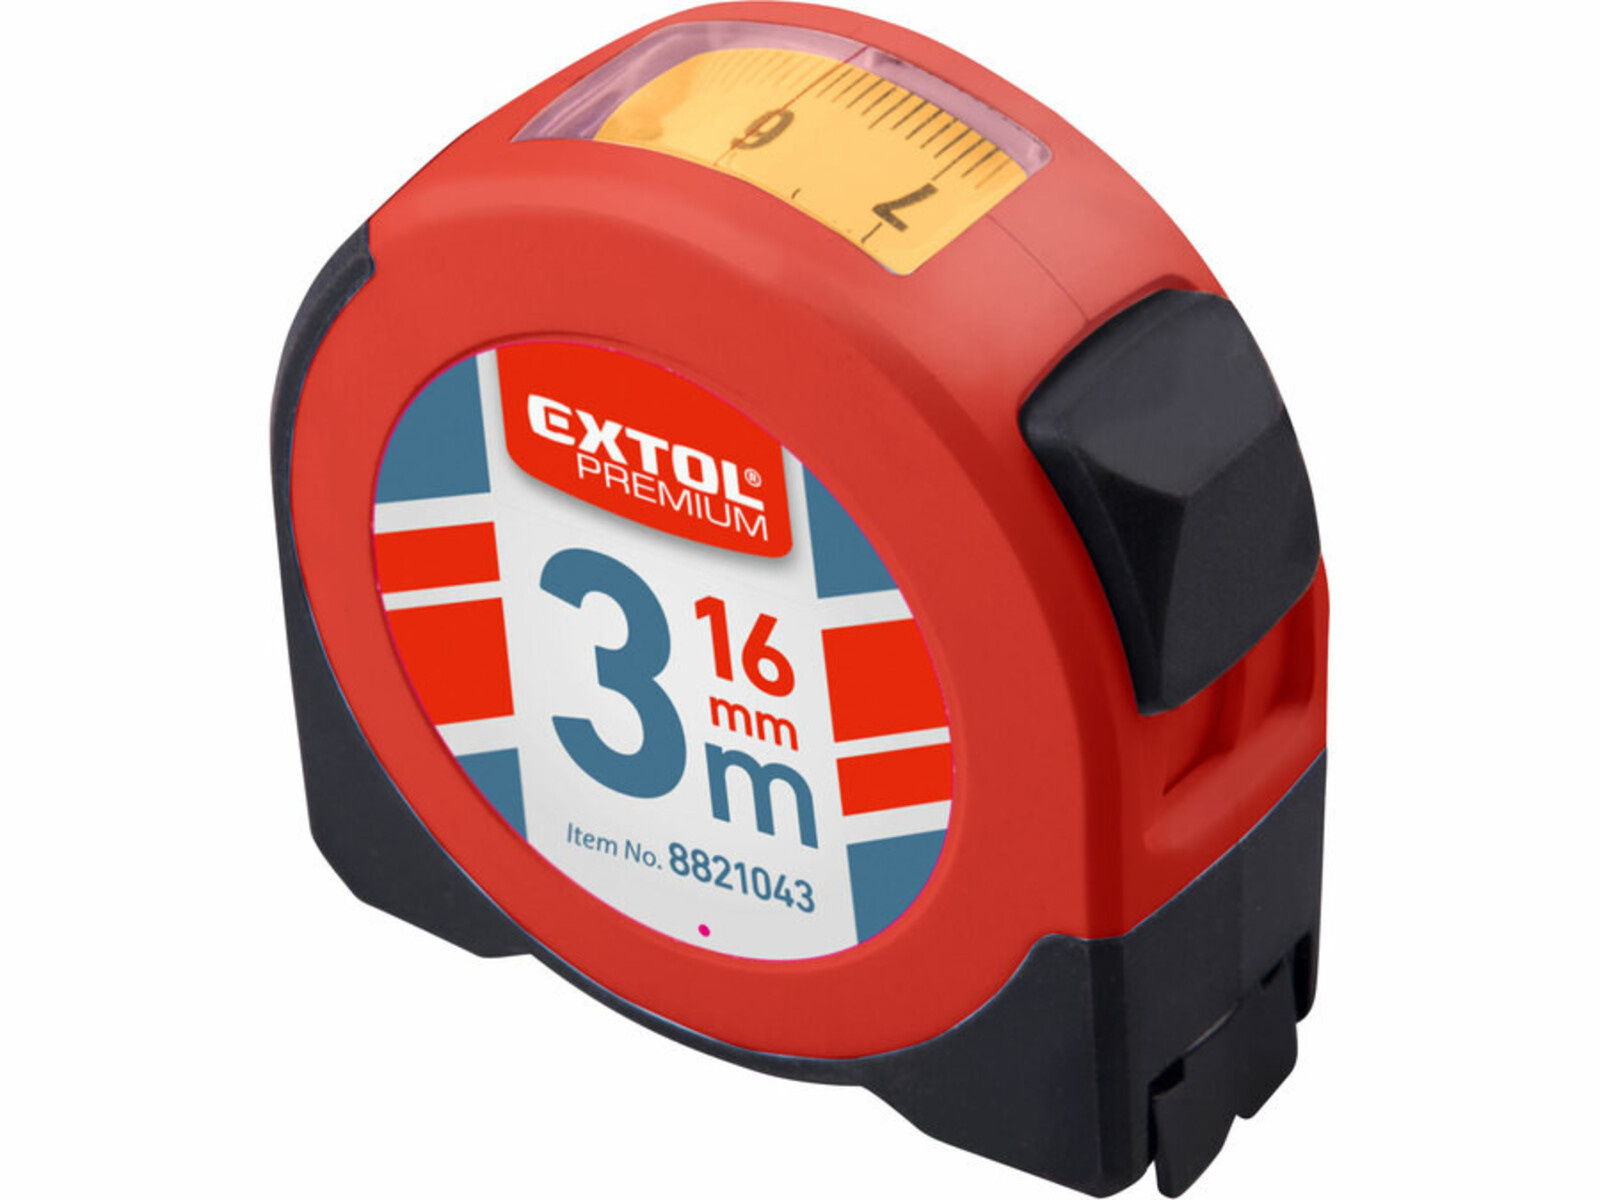 Extol Premium 8821043 meter zvinovací s odčítacím okienkom, 3m, šírka pásu 16mm - veľkosť: 3 m, farba: červená/čierna